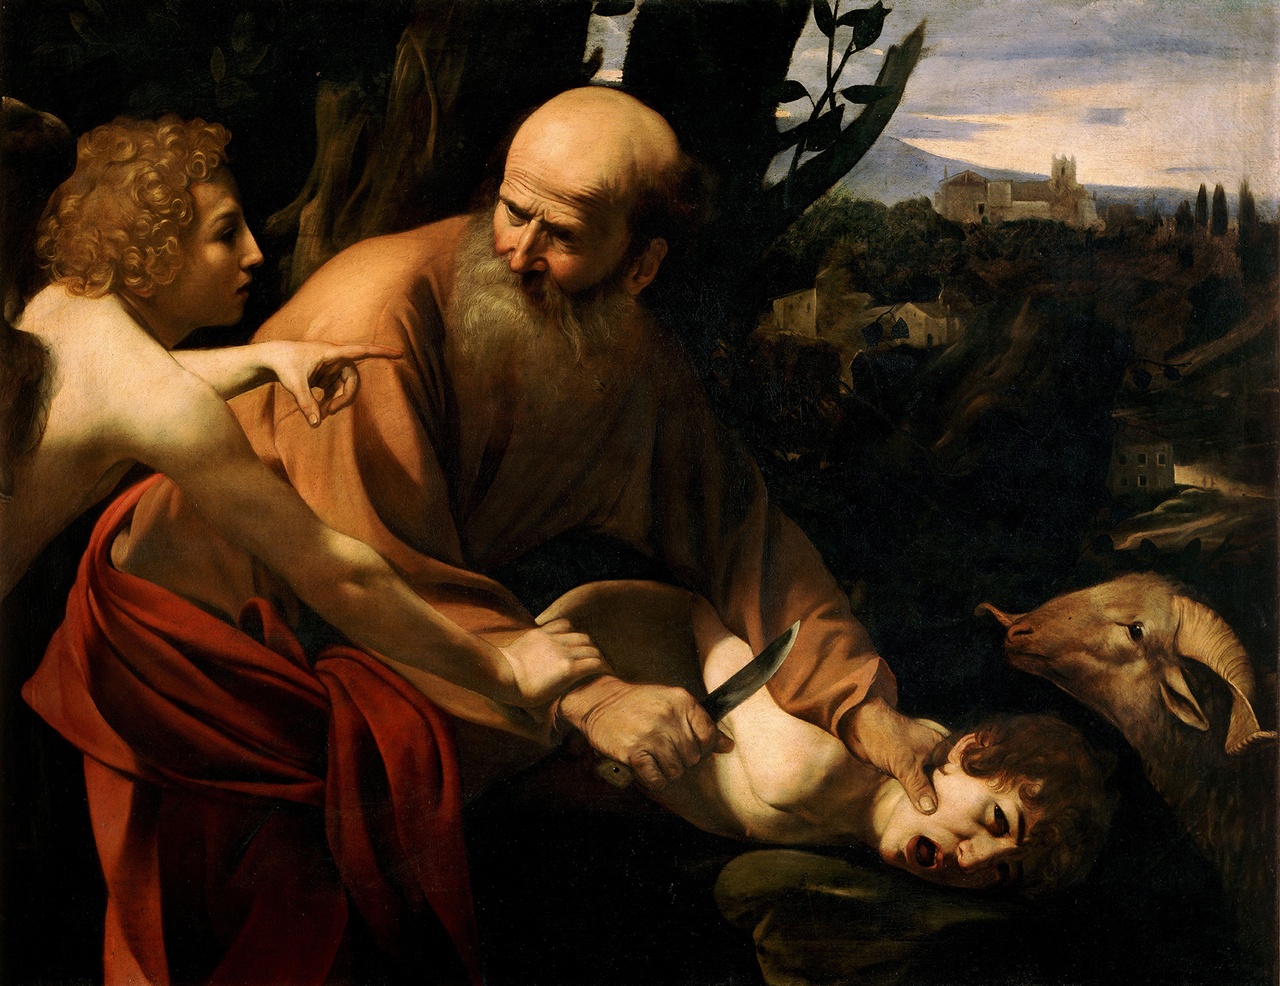 Michelangelo Merisi da Caravaggio, „Sacrificio di Isacco“, 1603